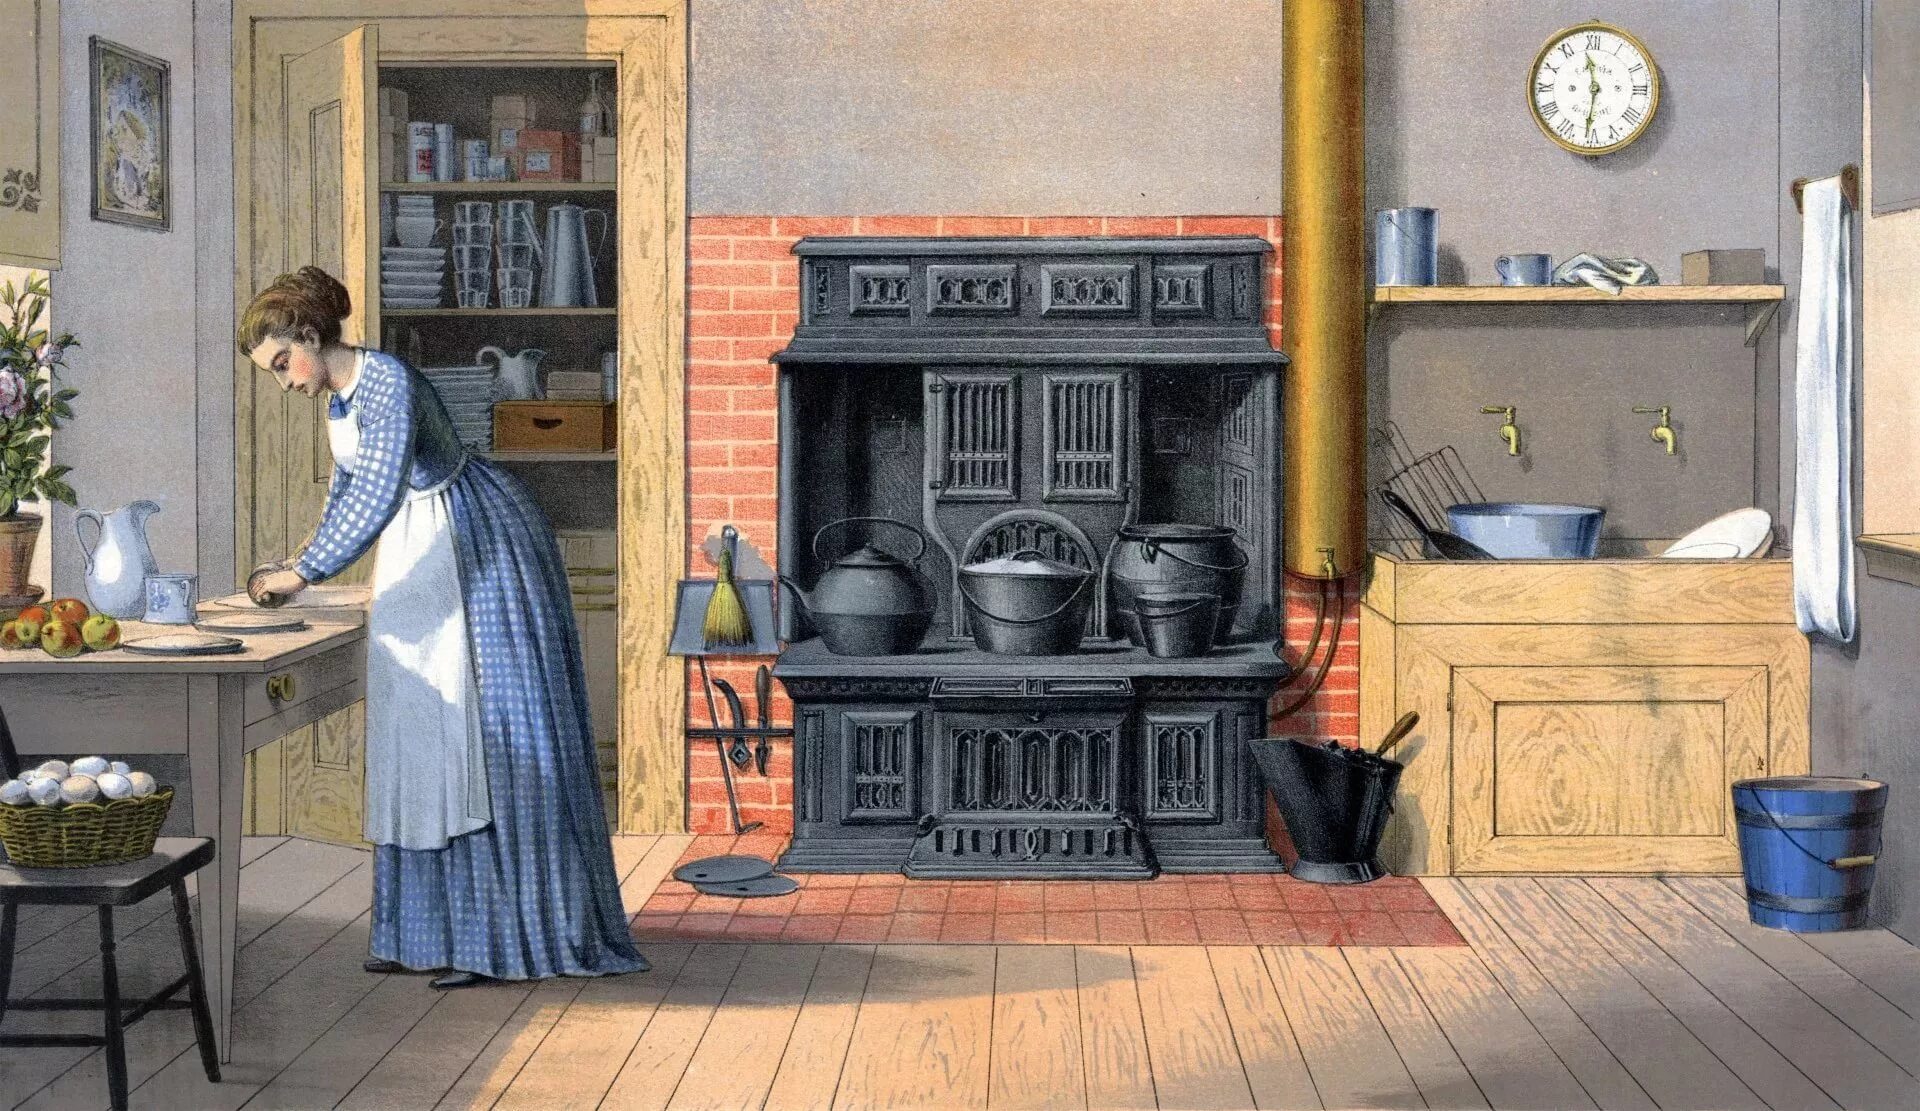 Первый домашний 18. Викторианская кухня 19 век. Кухня Англия 19 век. Викторианская кухня Англия 19 века. Кухня в усадьбе 19 века.